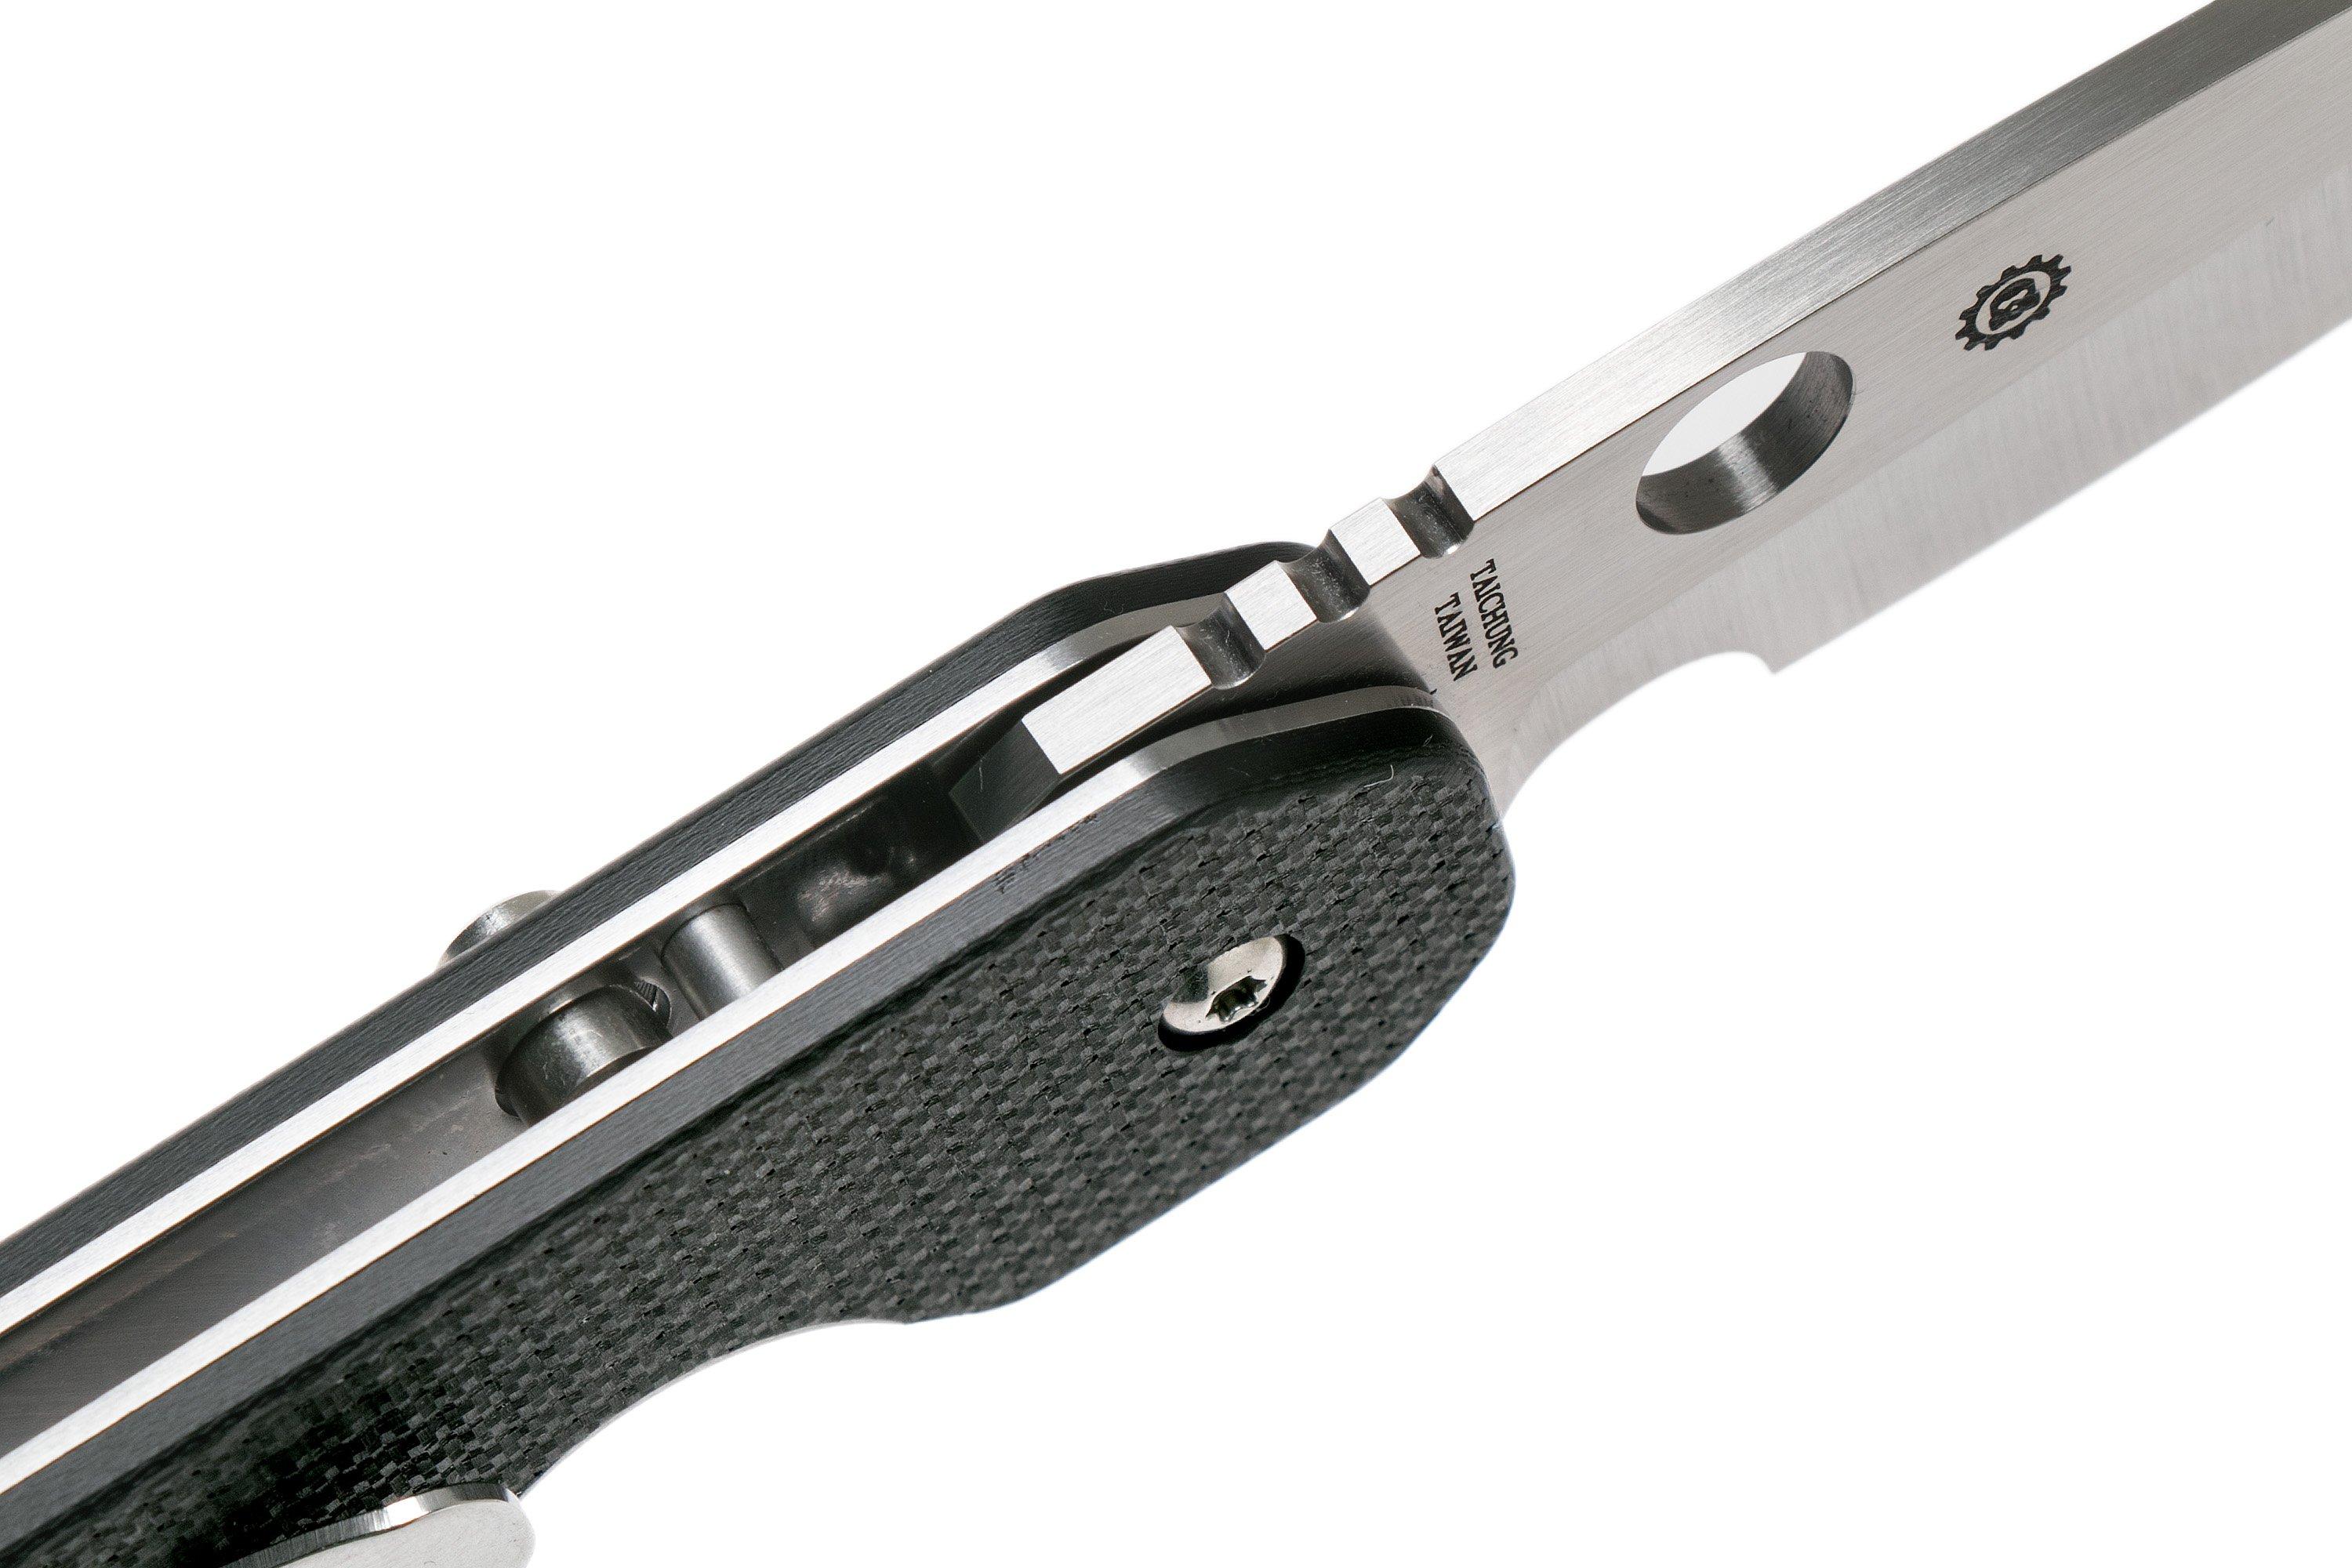 Spyderco Smock C240CFP pocket knife, Kevin Smock design